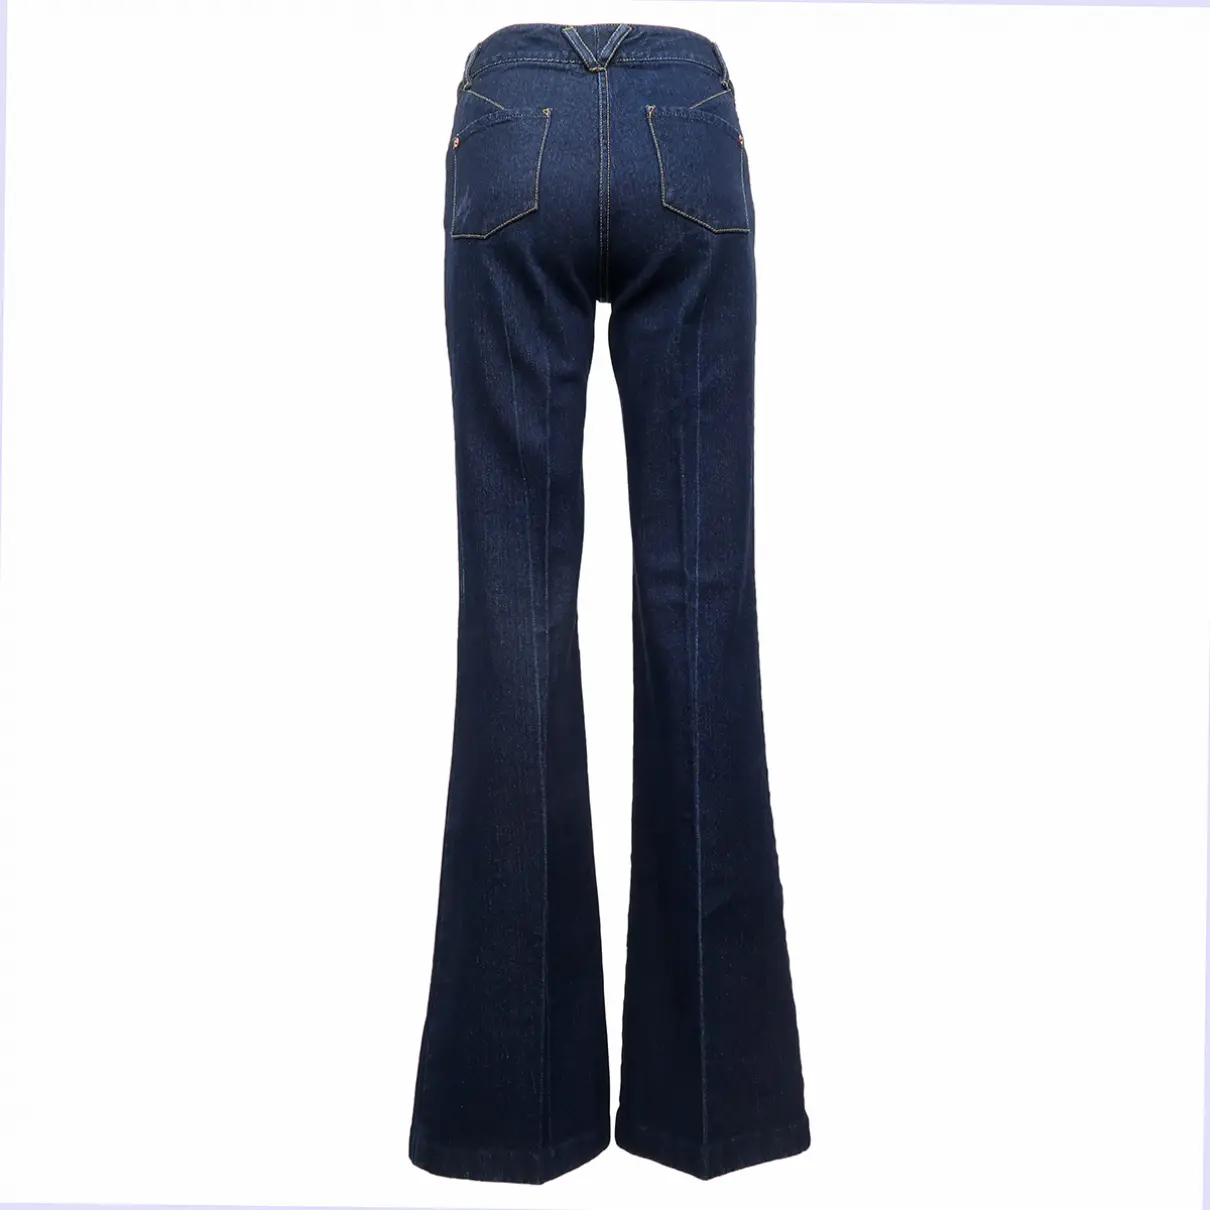 Buy 3.1 Phillip Lim Blue Cotton Jeans online